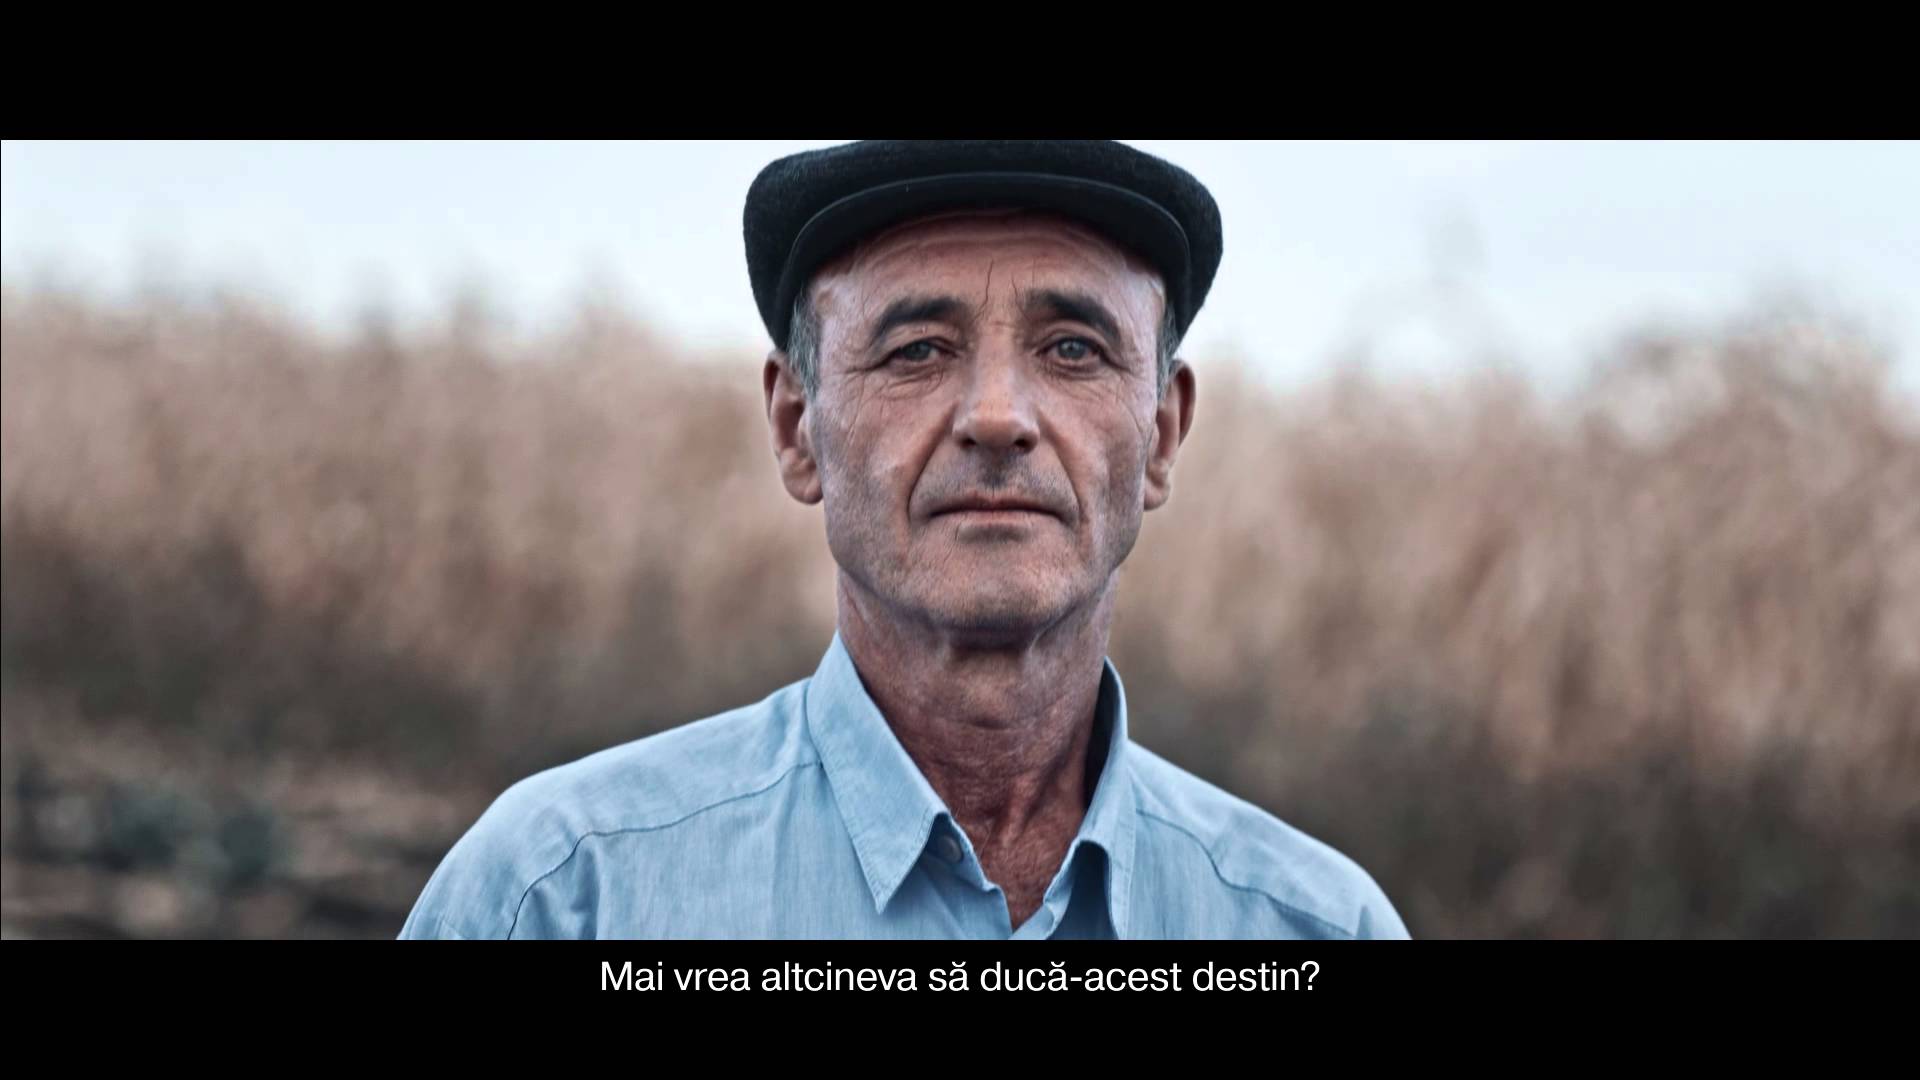 VIDEO: Moldovas zemnieki varen radošā veidā protestē pret Krievijas aizliegumu ievest valstī Moldovā audzētus augļus!